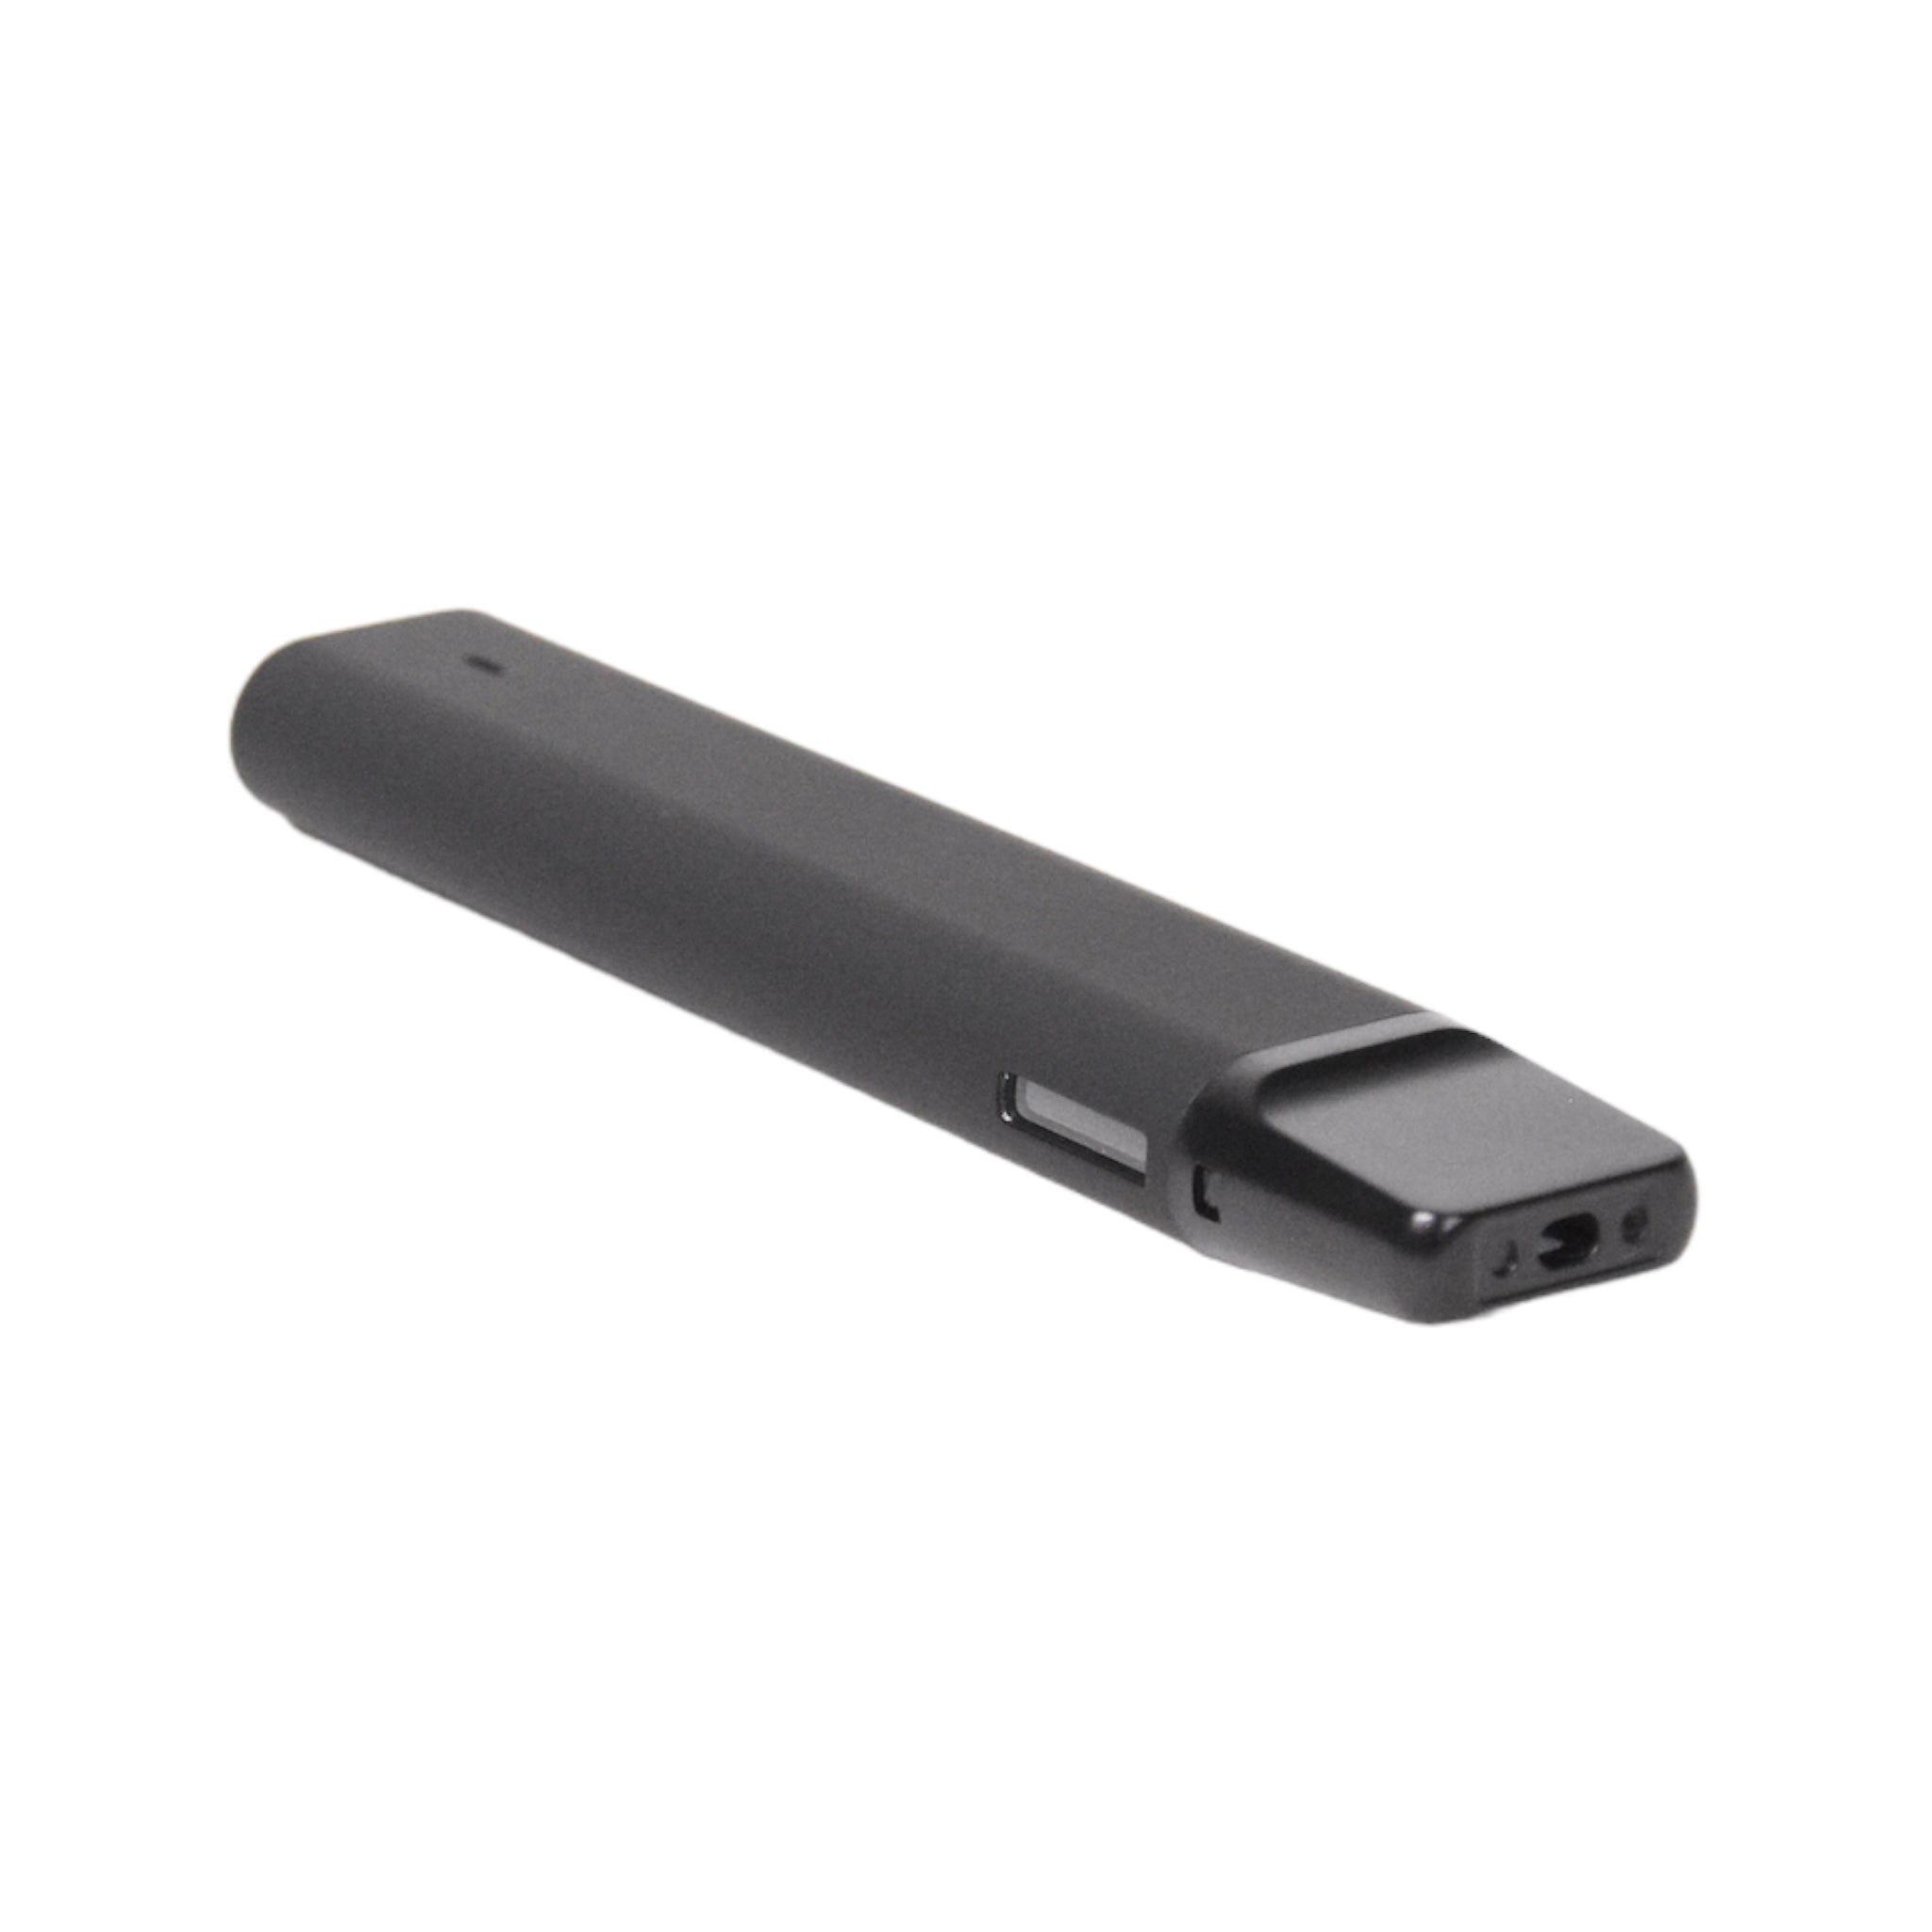 4th Gen 2mL Disposable Side Window-Disposable Vaporizers-Vape Pens Wholesale